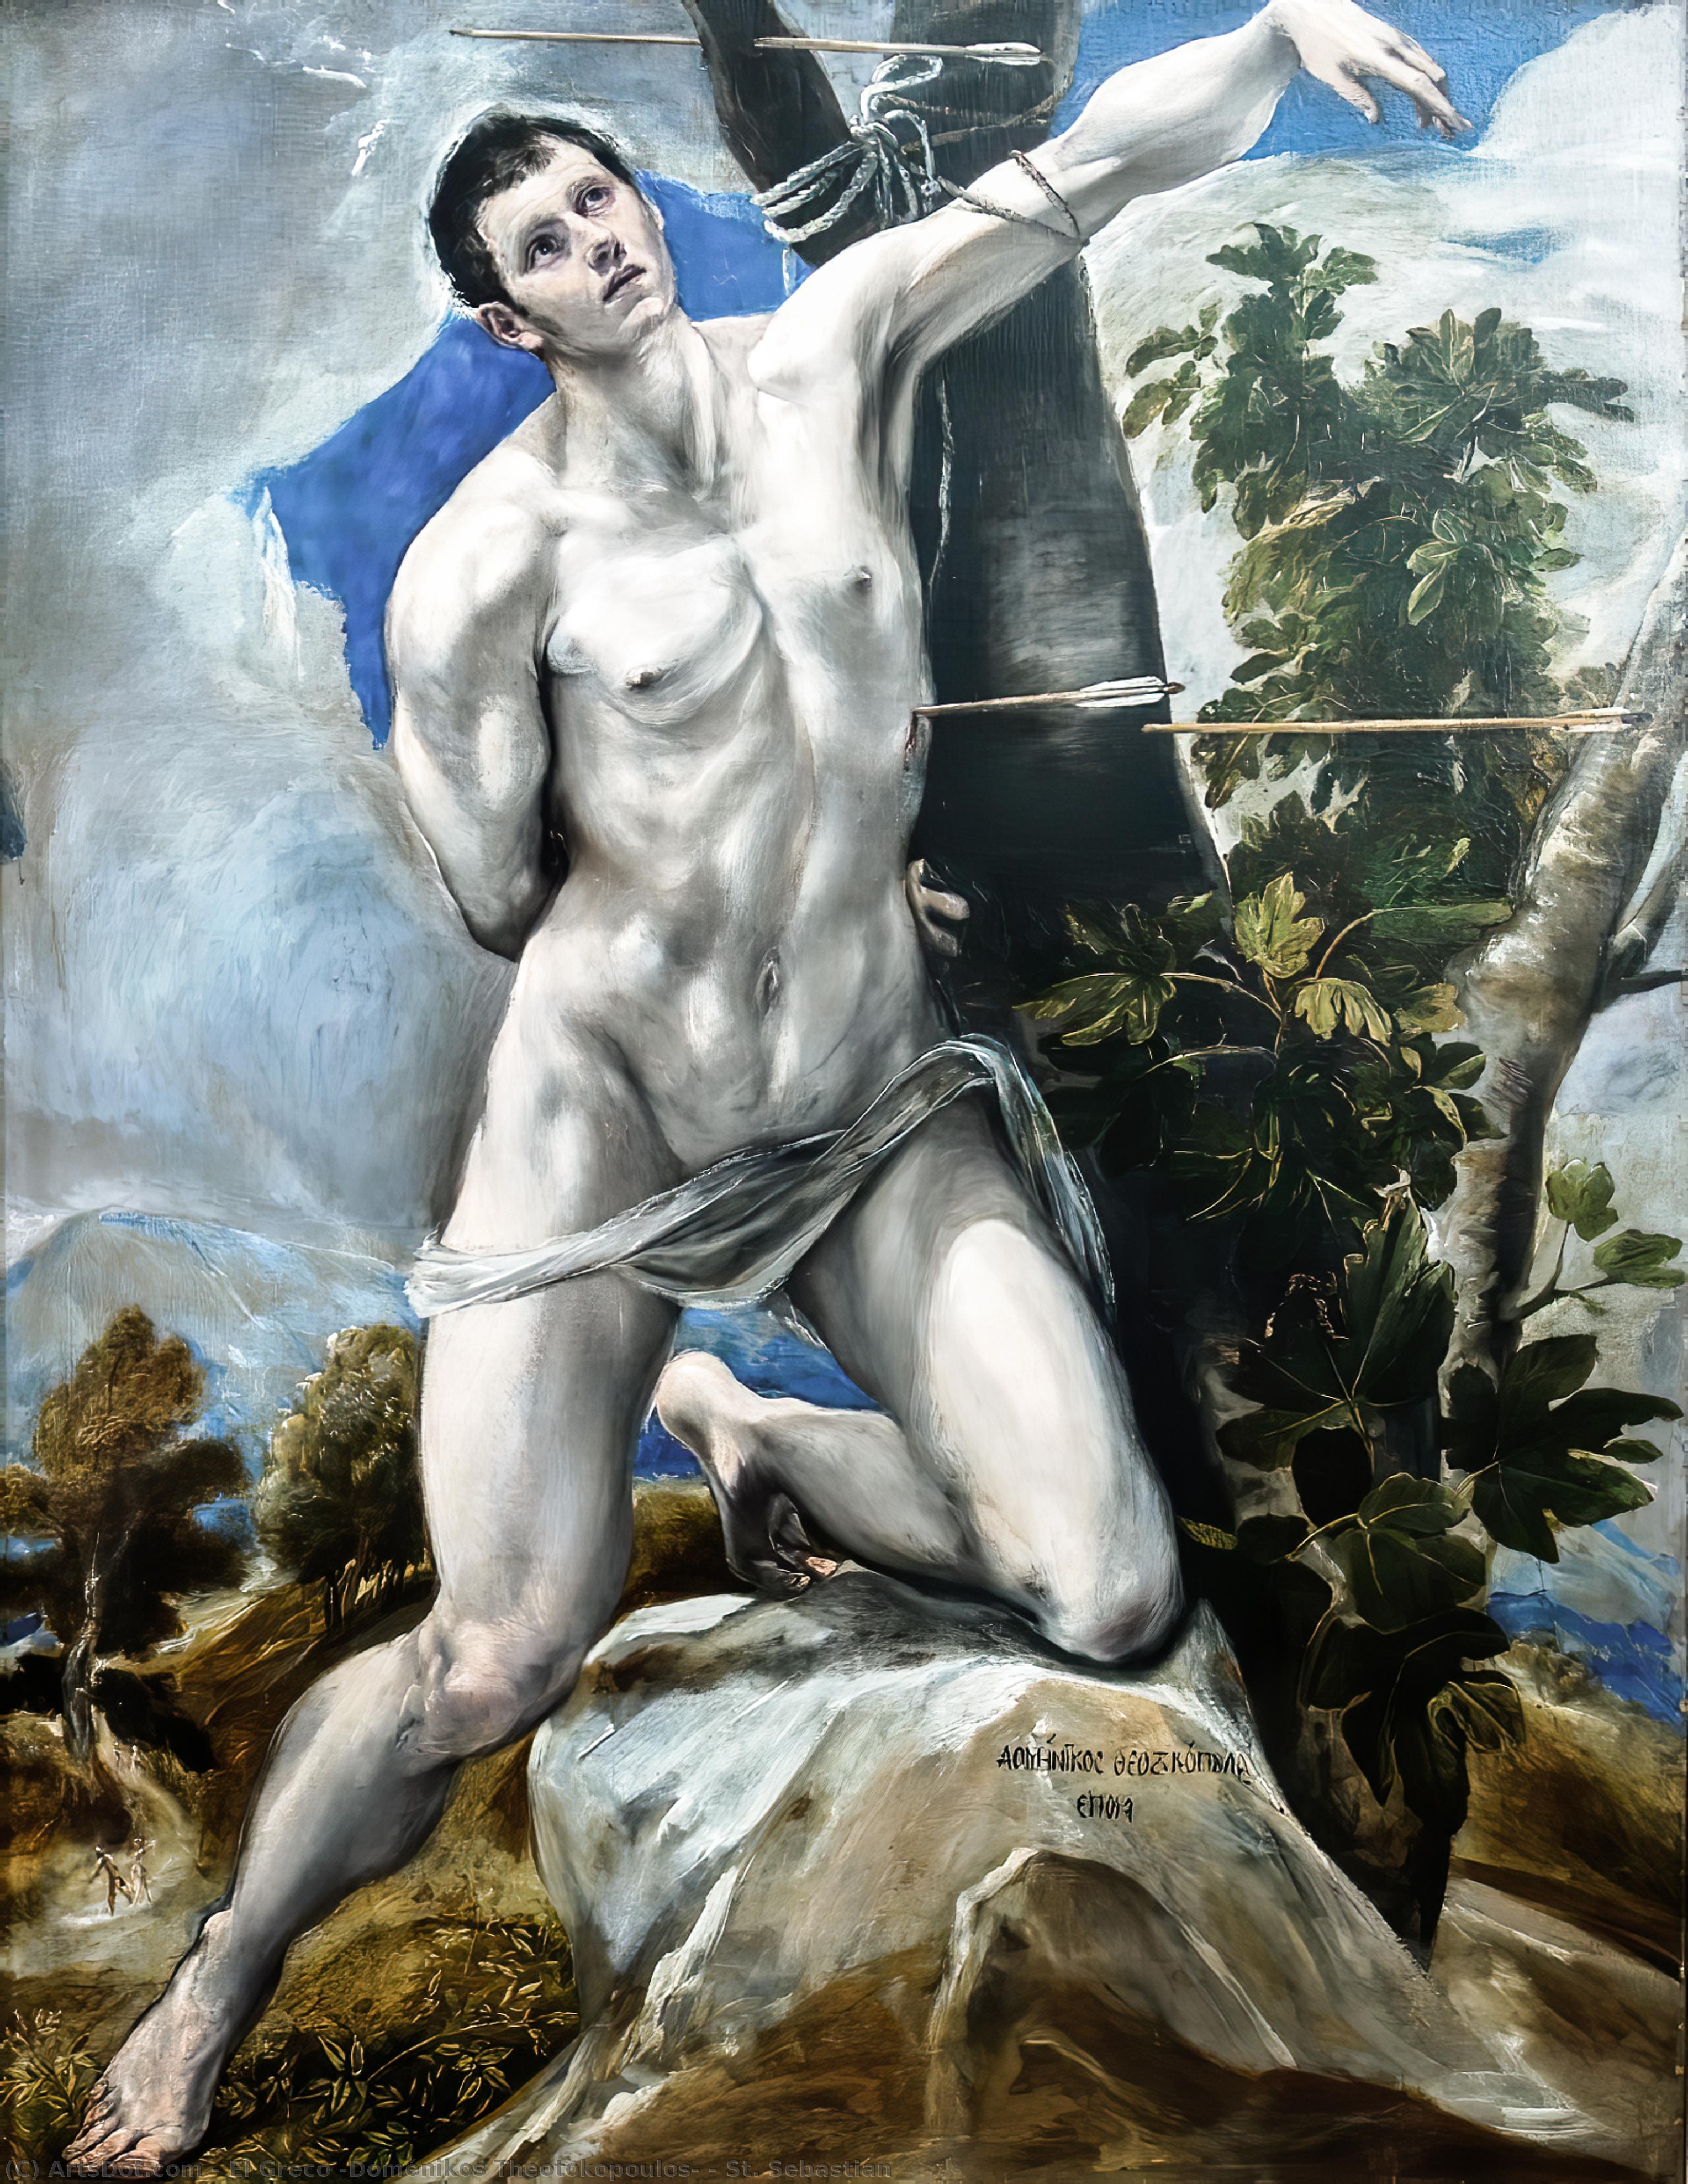 Acheter Reproductions D'art De Musée St. Sebastian, 1577 de El Greco (Doménikos Theotokopoulos) (1541-1614, Greece) | ArtsDot.com